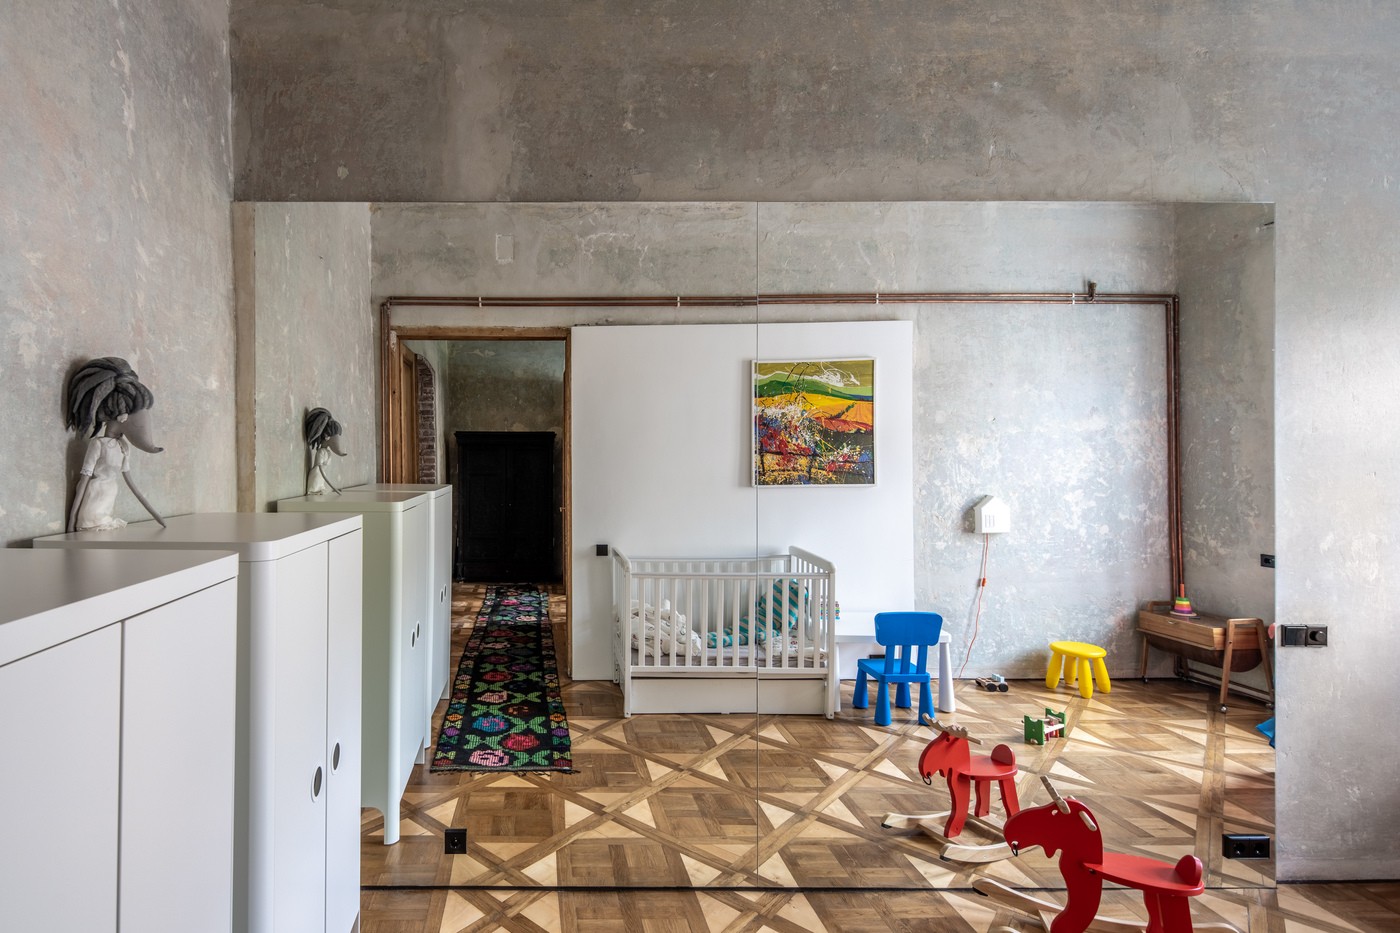 Décor do dia quarto infantil sem gênero ganha cores nos detalhes (Foto: Andrey Bezuglov)